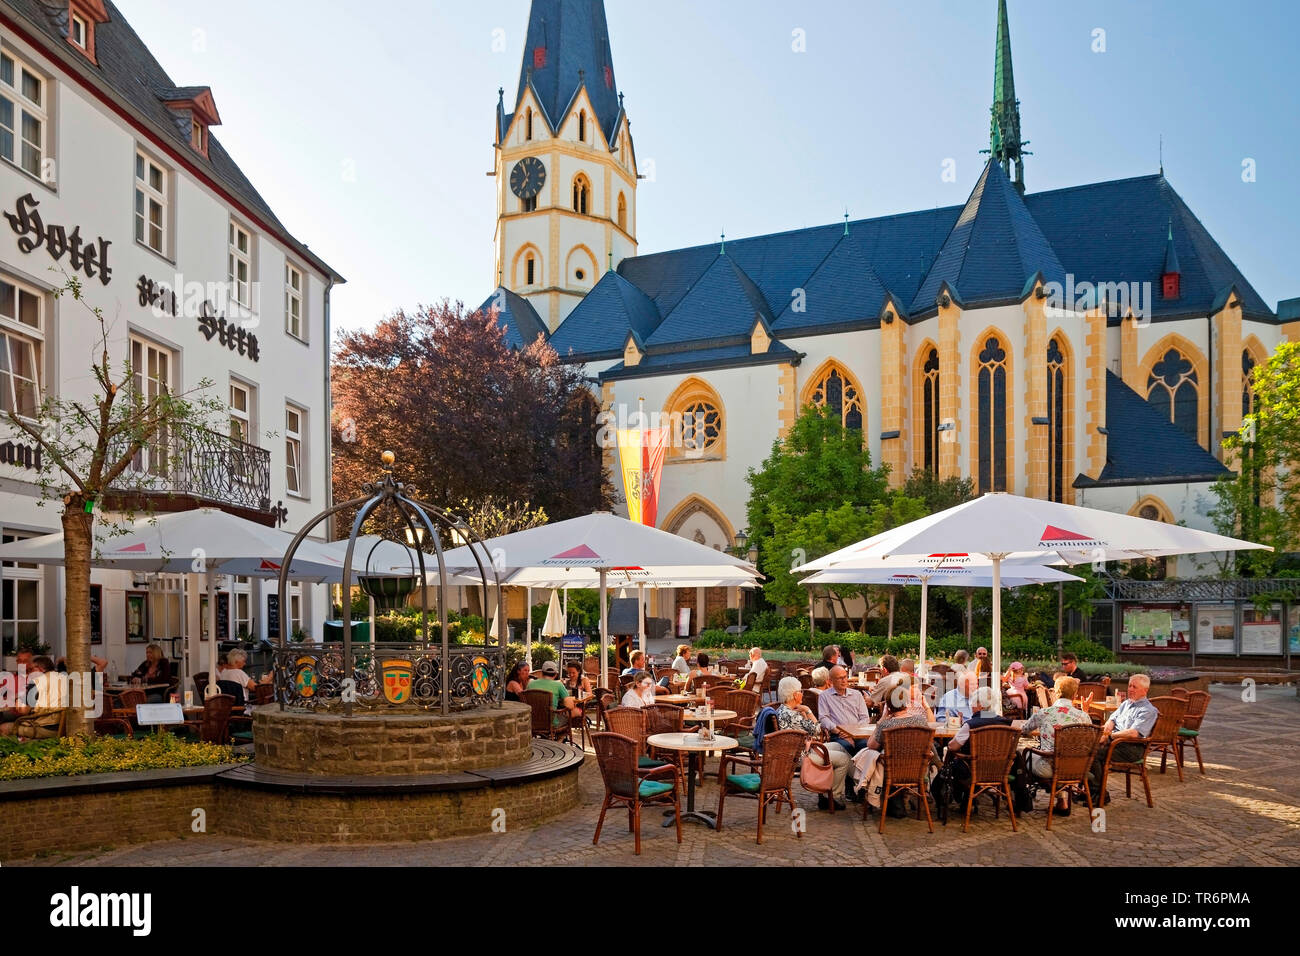 Place du Marché et Église paroissiale catholique Laurentius, Allemagne, Rhénanie-Palatinat, Eifel, Ahrweiler Banque D'Images